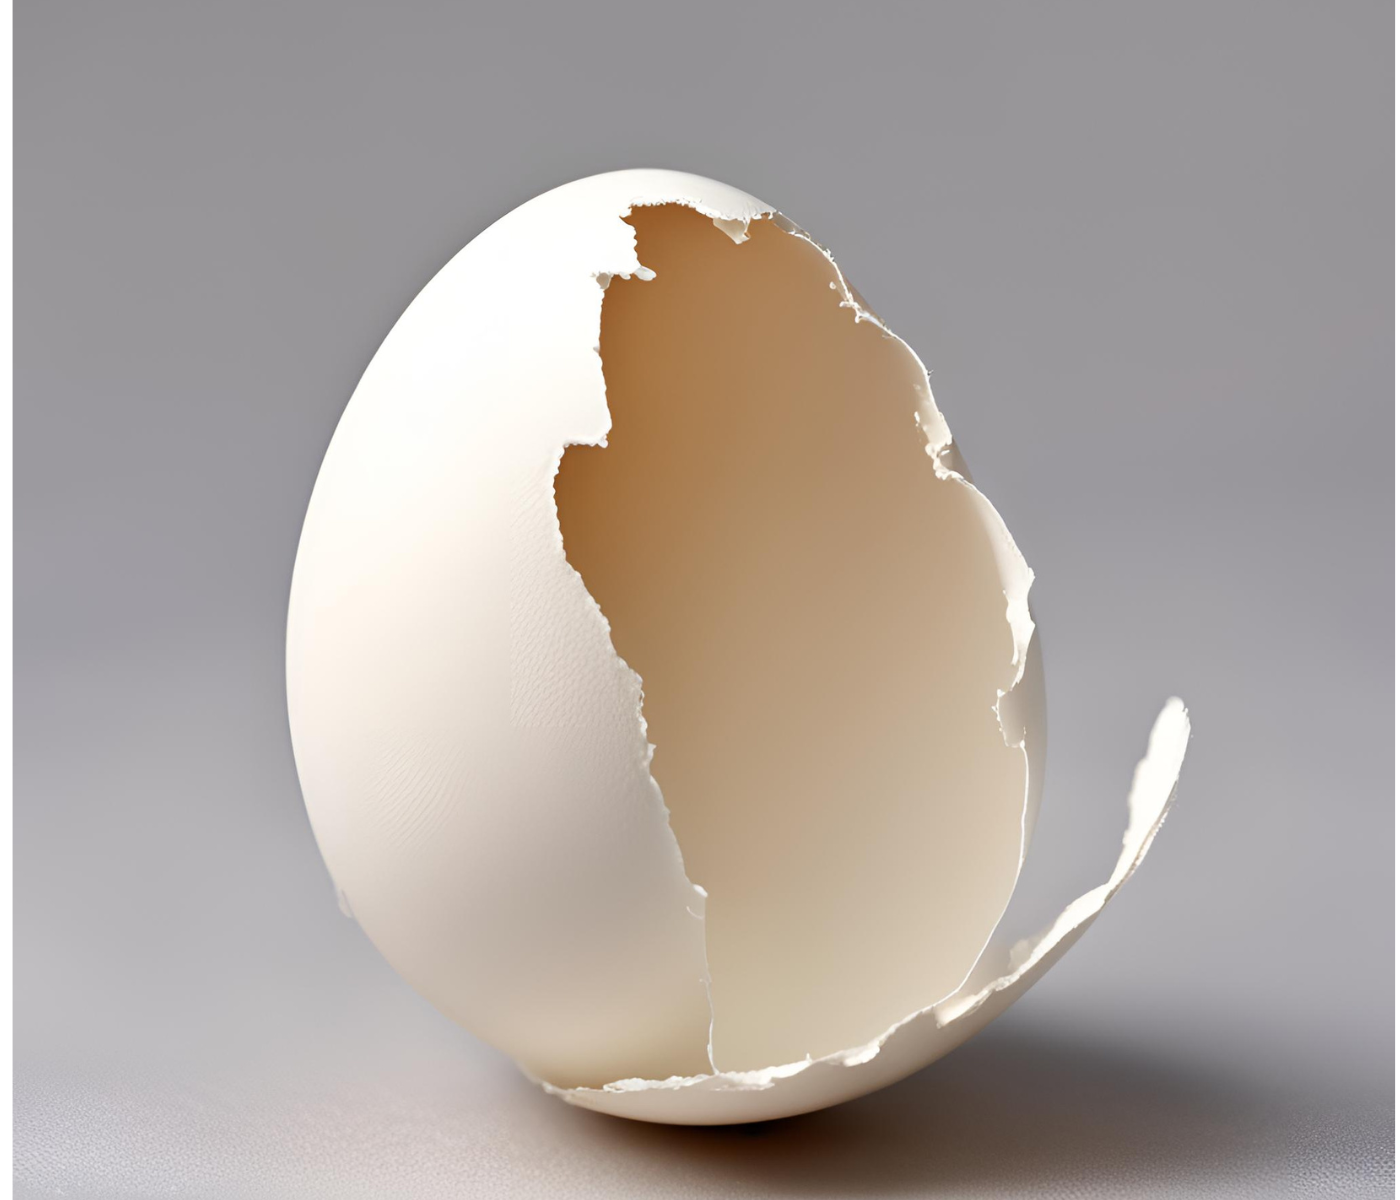 La cáscara de huevo: estructura, formación & qué factores afectan a su calidad